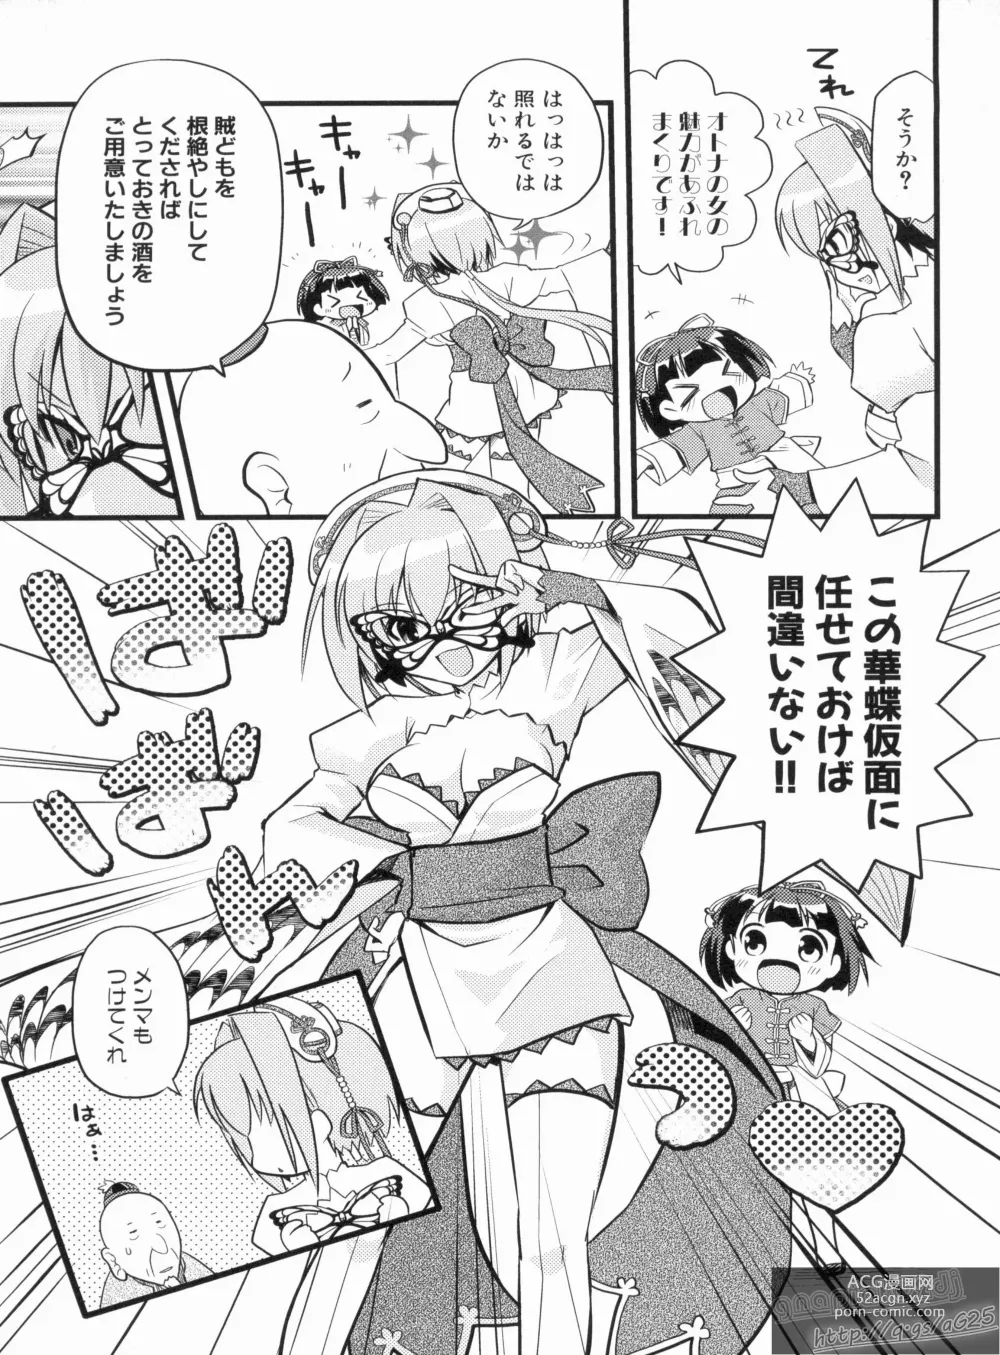 Page 17 of manga Shin Koihime Musou Gaishi Saiten VOL.1